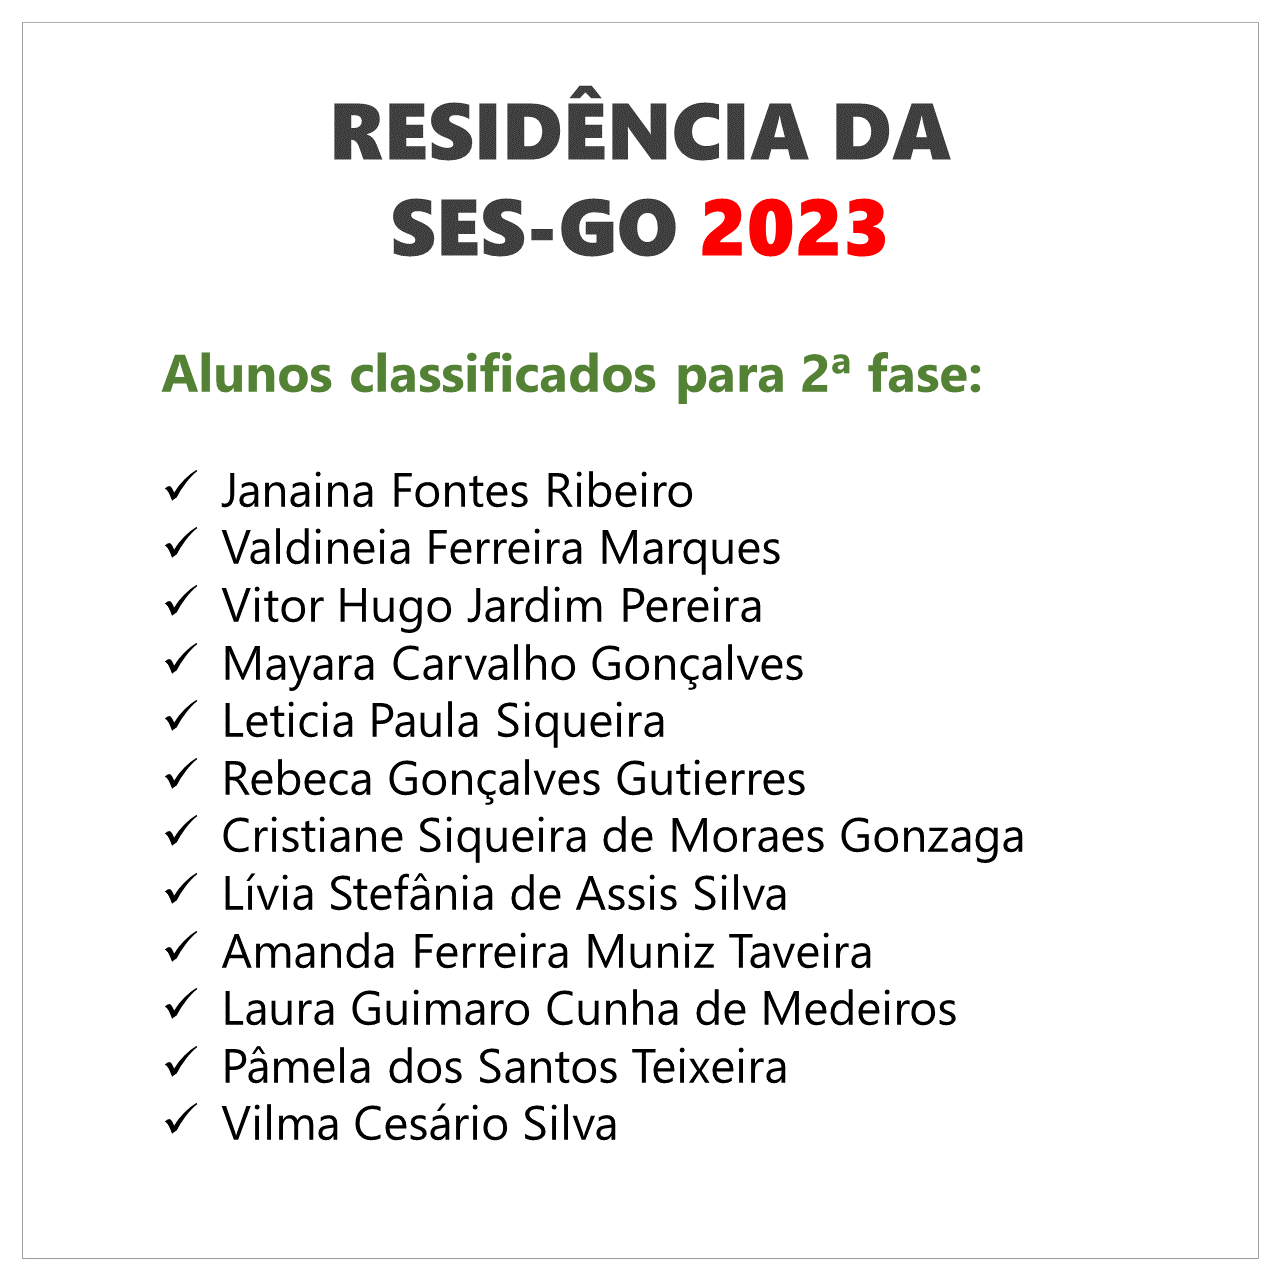 ses-go 2023